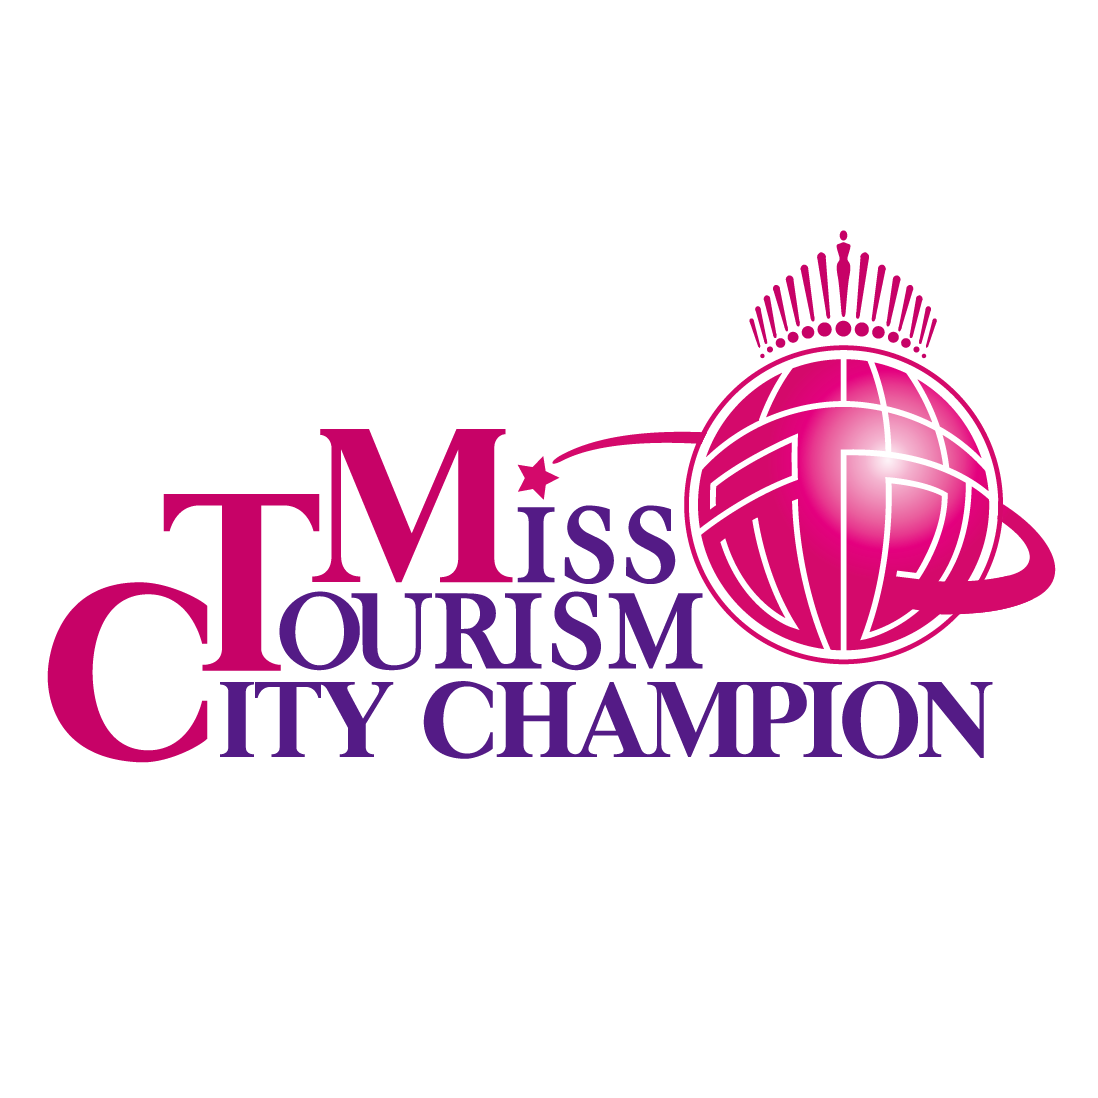 世界城市旅遊小姐年度冠軍總決賽